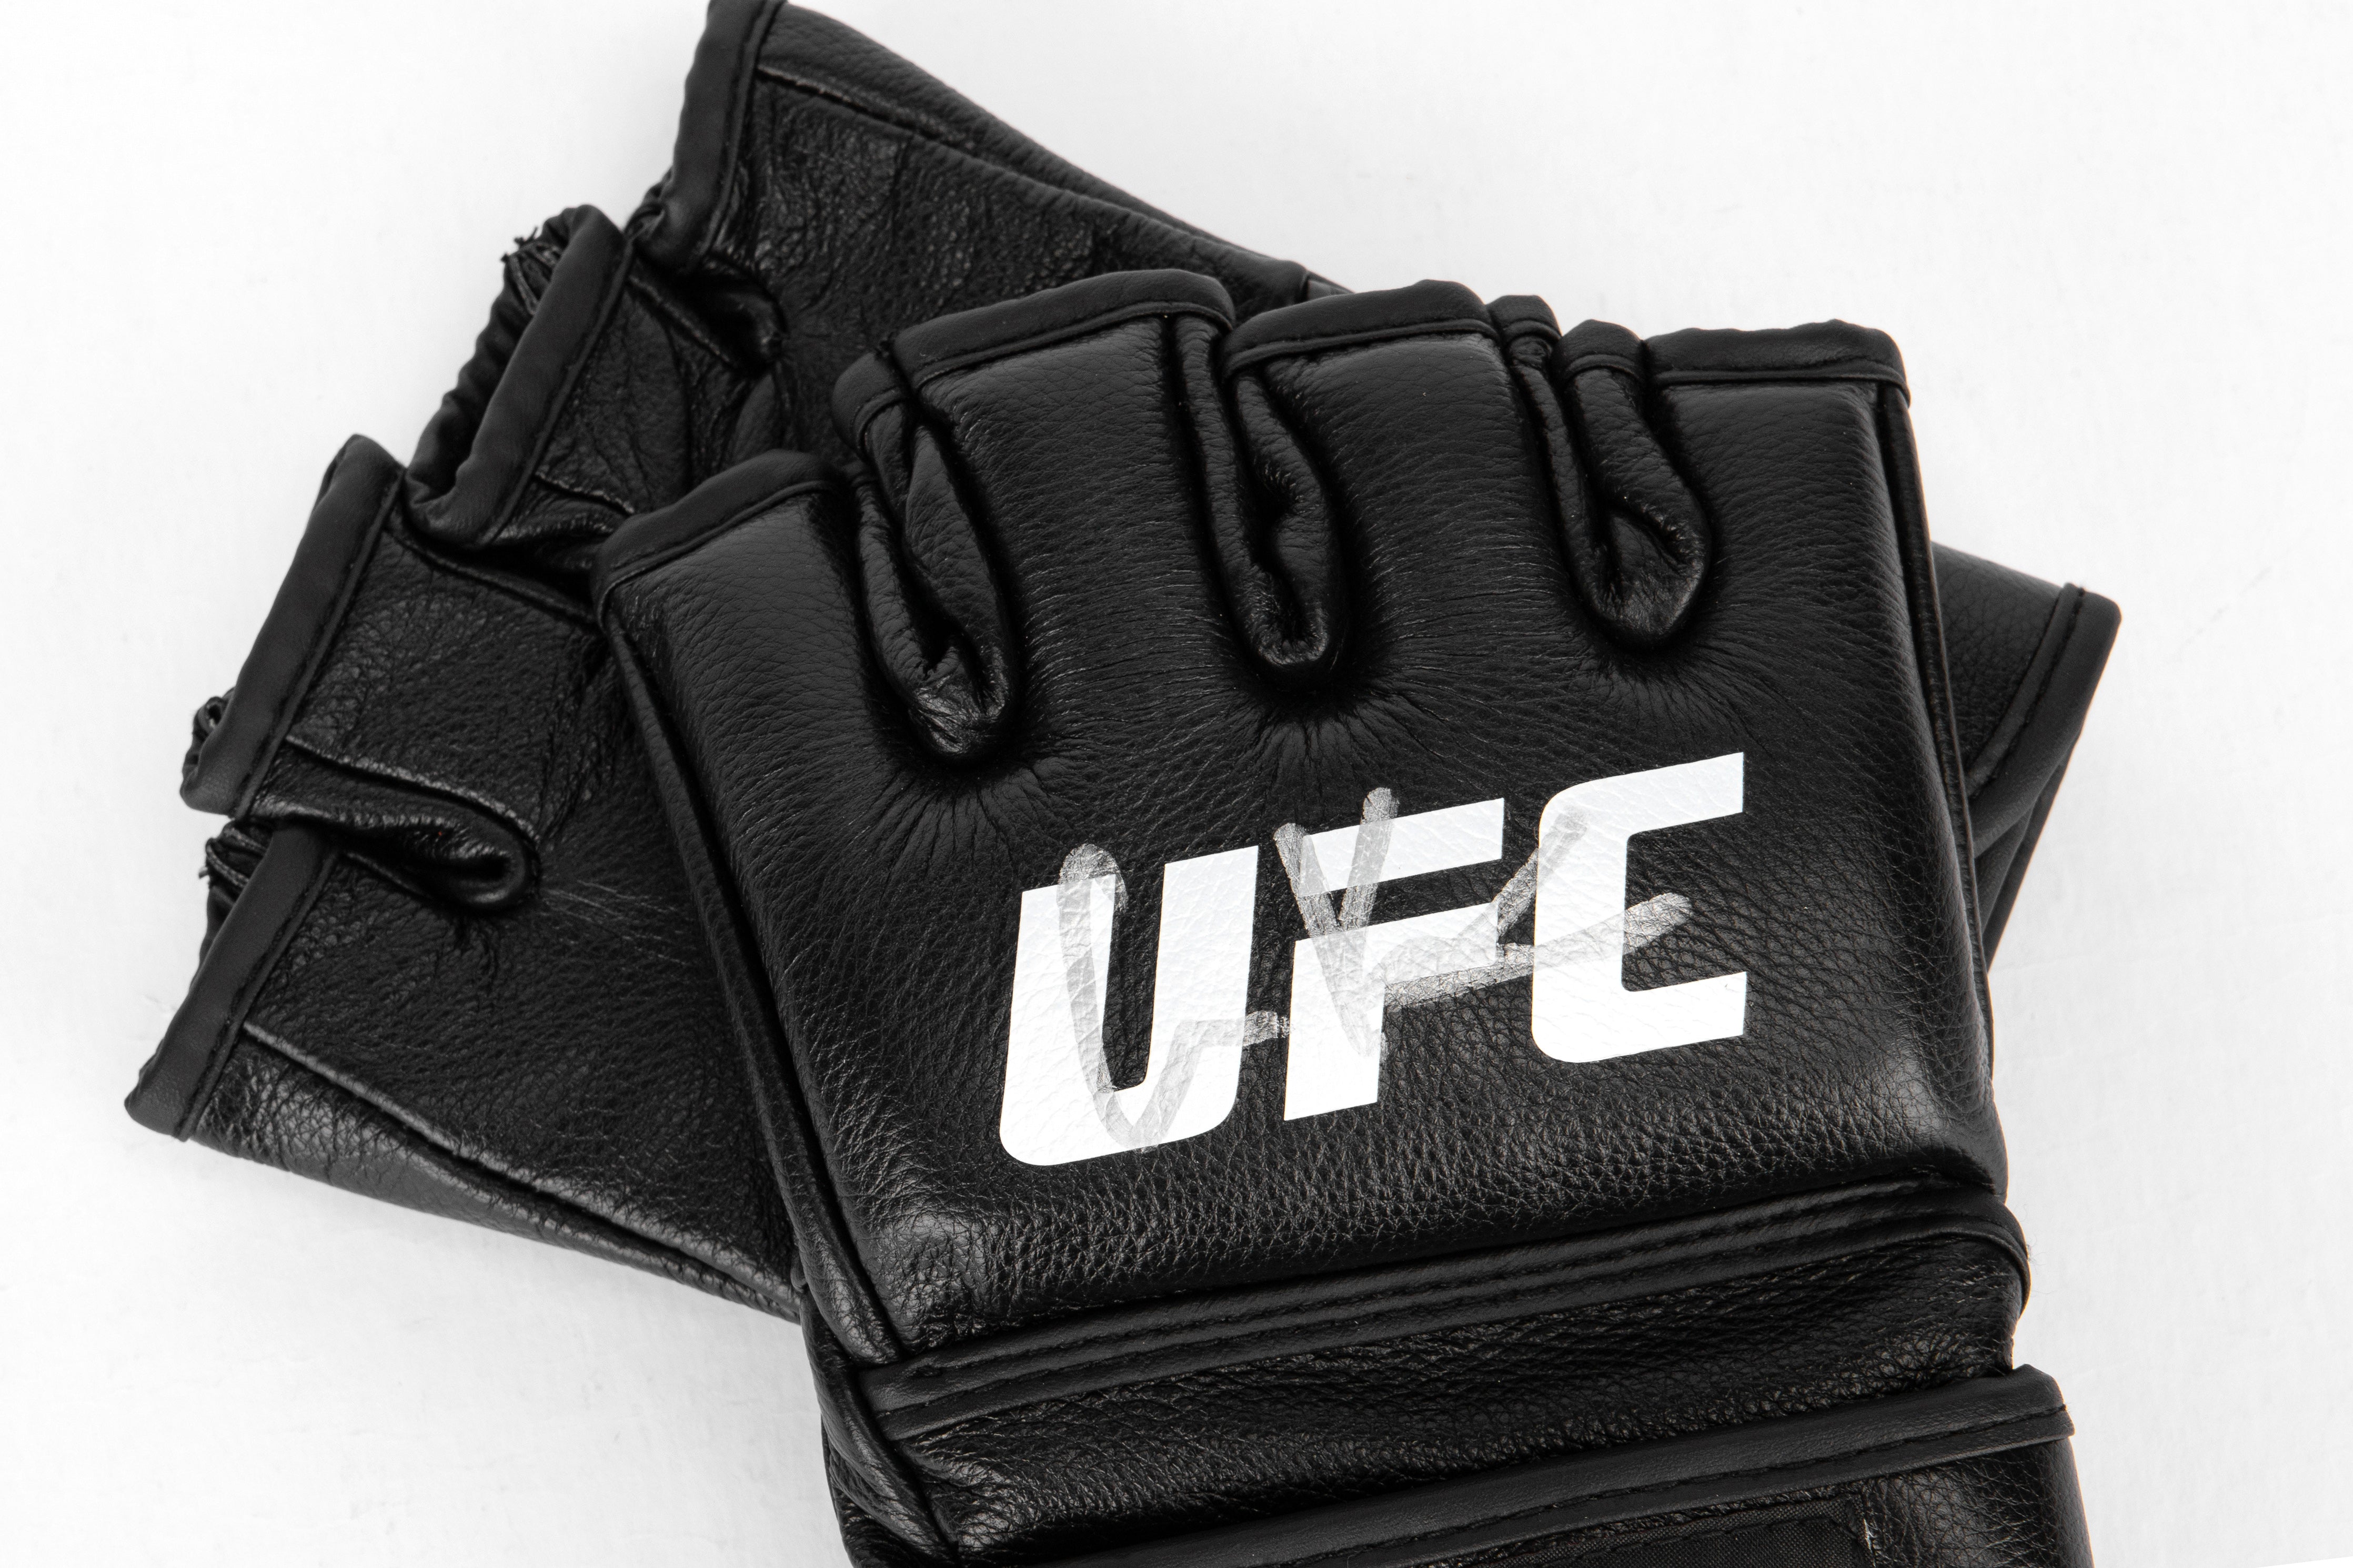 Calvin Kattar Signed Official UFC Gloves